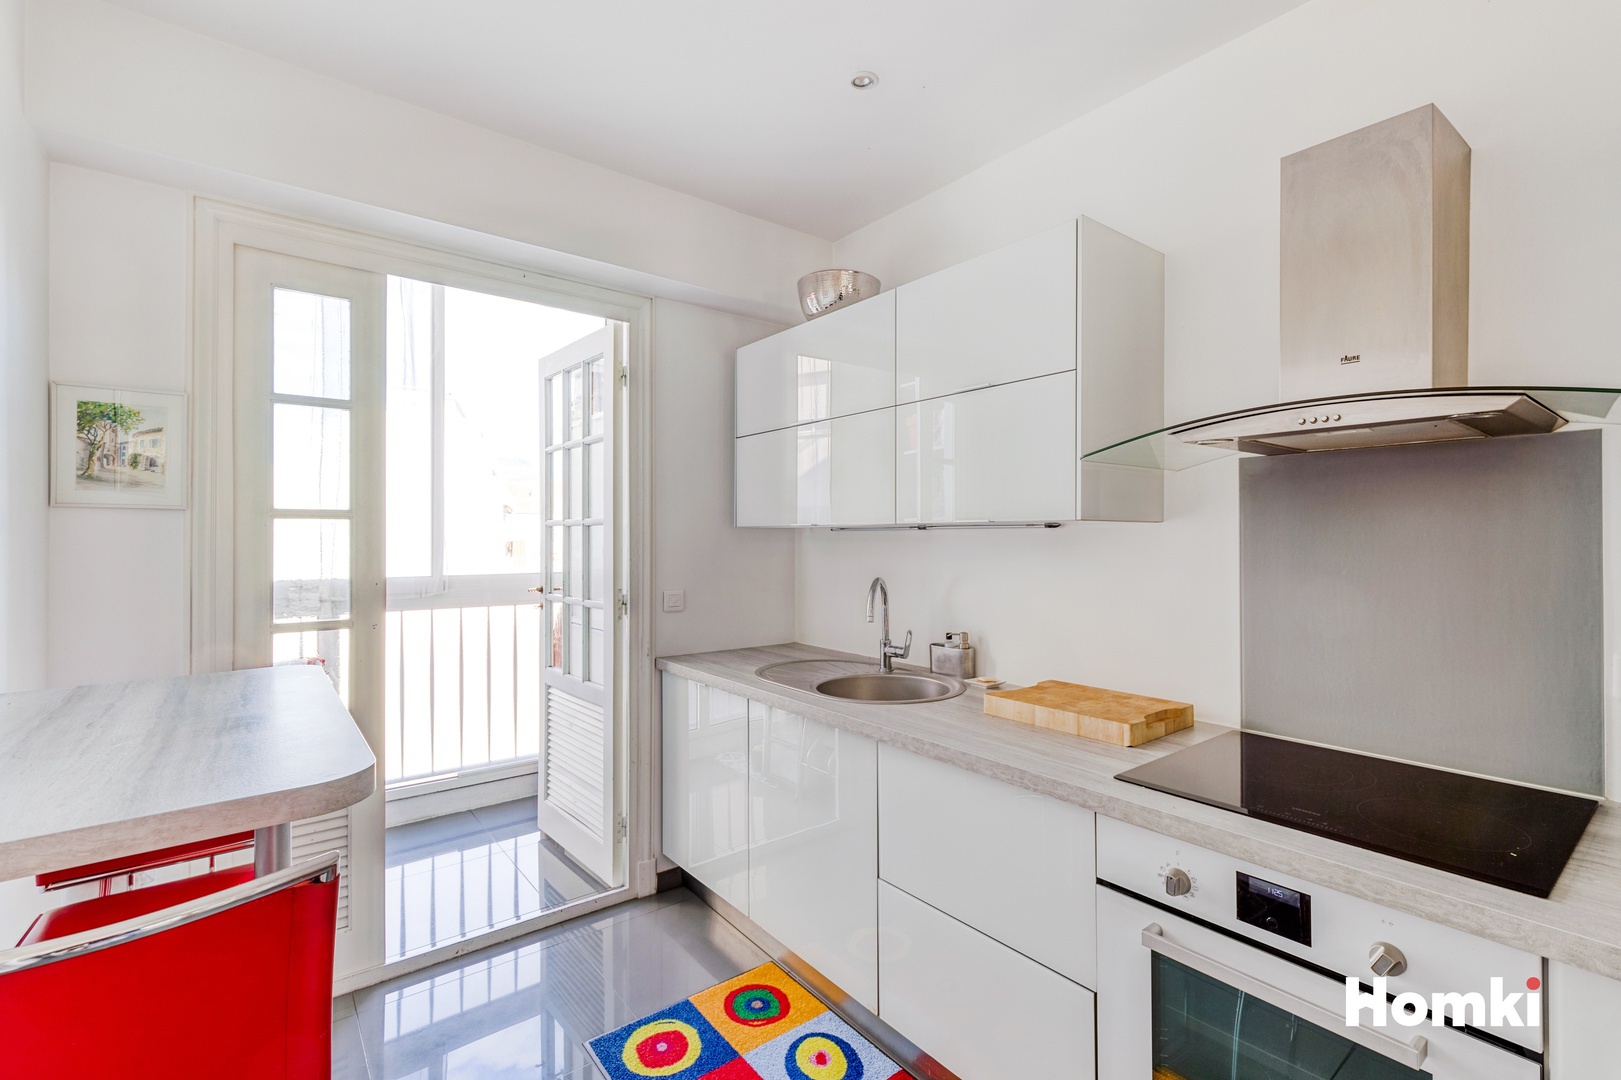 Homki - Vente Appartement  de 83.0 m² à Nice 06000